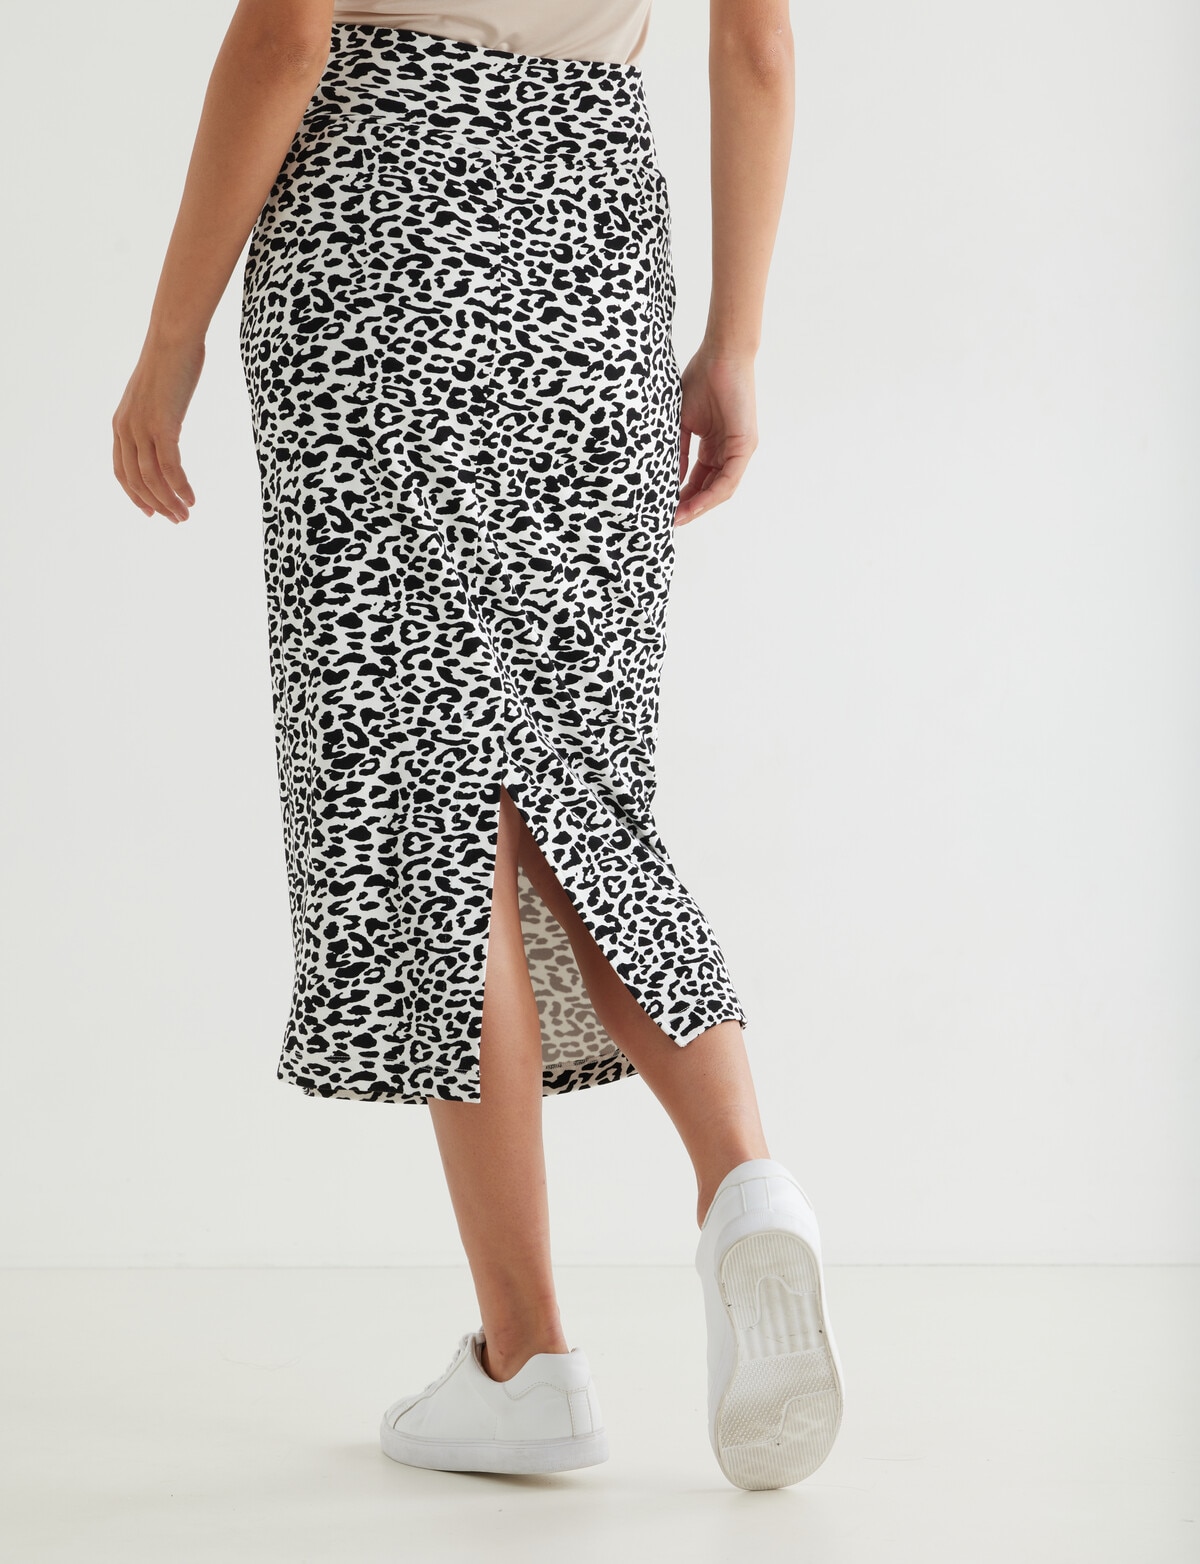 Whistle Leopard Pull-On Tube Skirt, White & Black - Skirts